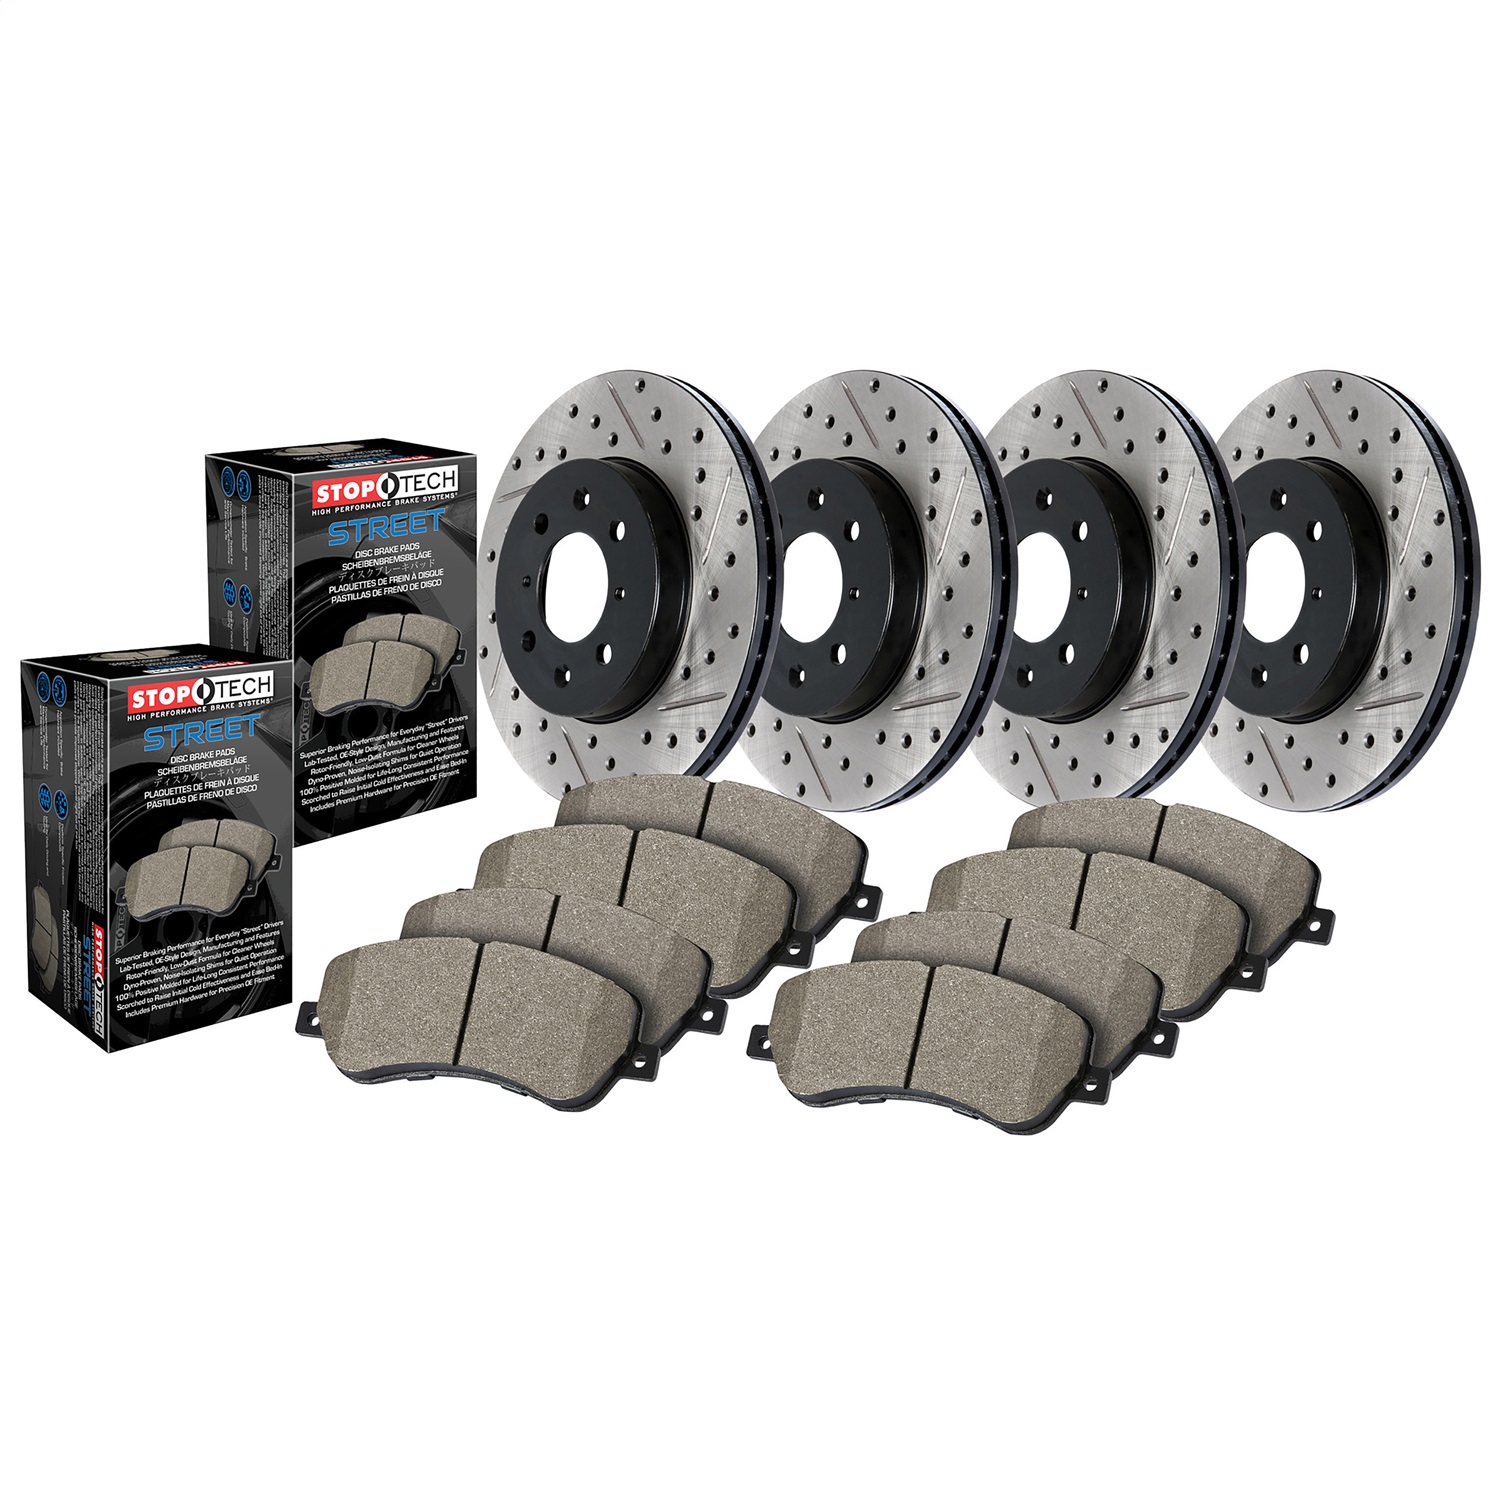 StopTech 935.42013 Disc Brake Upgrade Kit